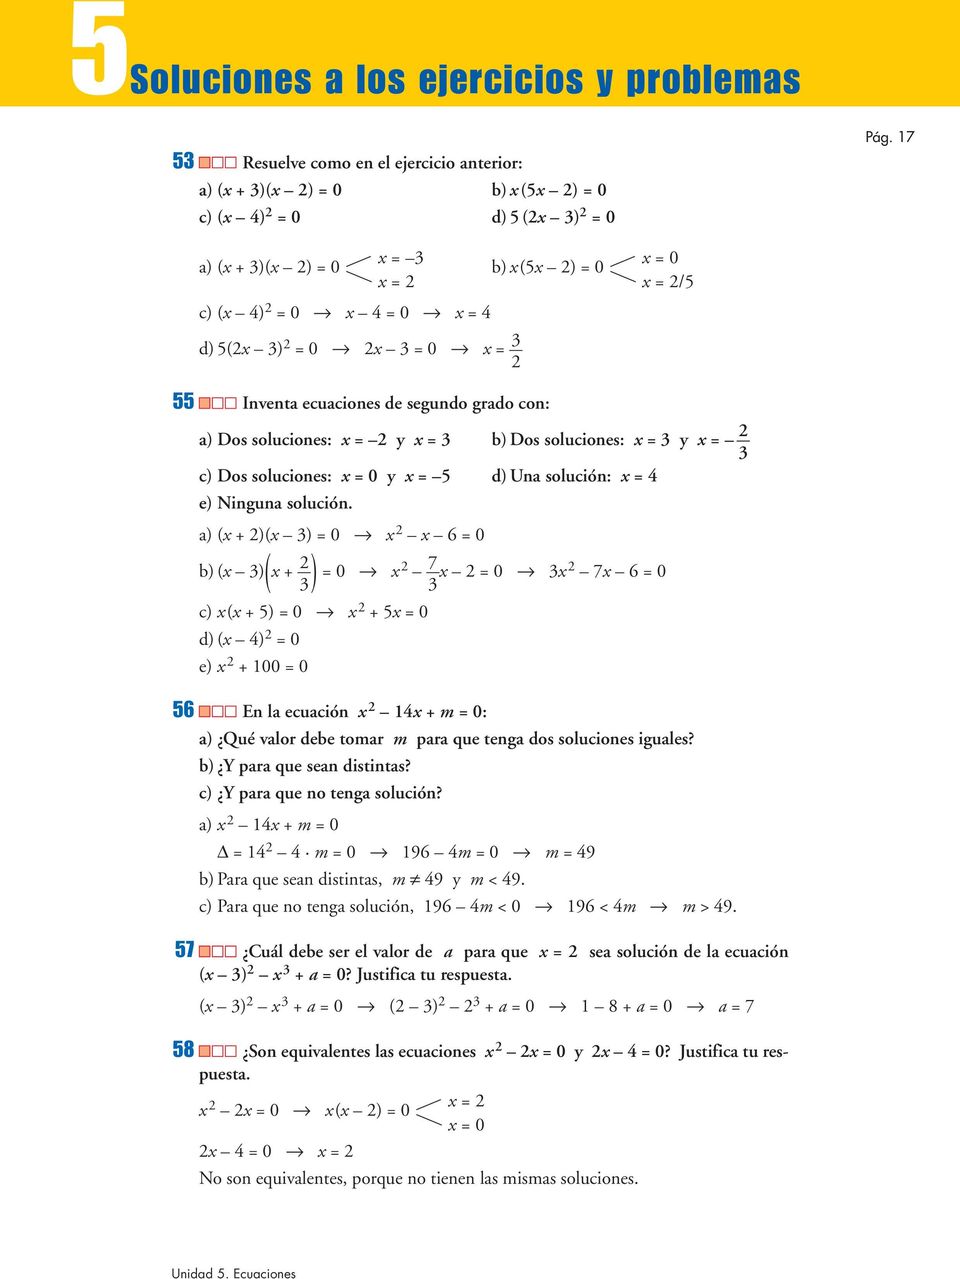 solución. a) ( )( ) 0 6 0 b) ( ) 0 7 ( 0 7 6 0 ) c) ( 5) 0 5 0 d) ( 4) 0 e) 00 0 56 En la ecuación 4 m 0: a) Qué valor debe tomar m para que tenga dos soluciones iguales? b) Y para que sean distintas?